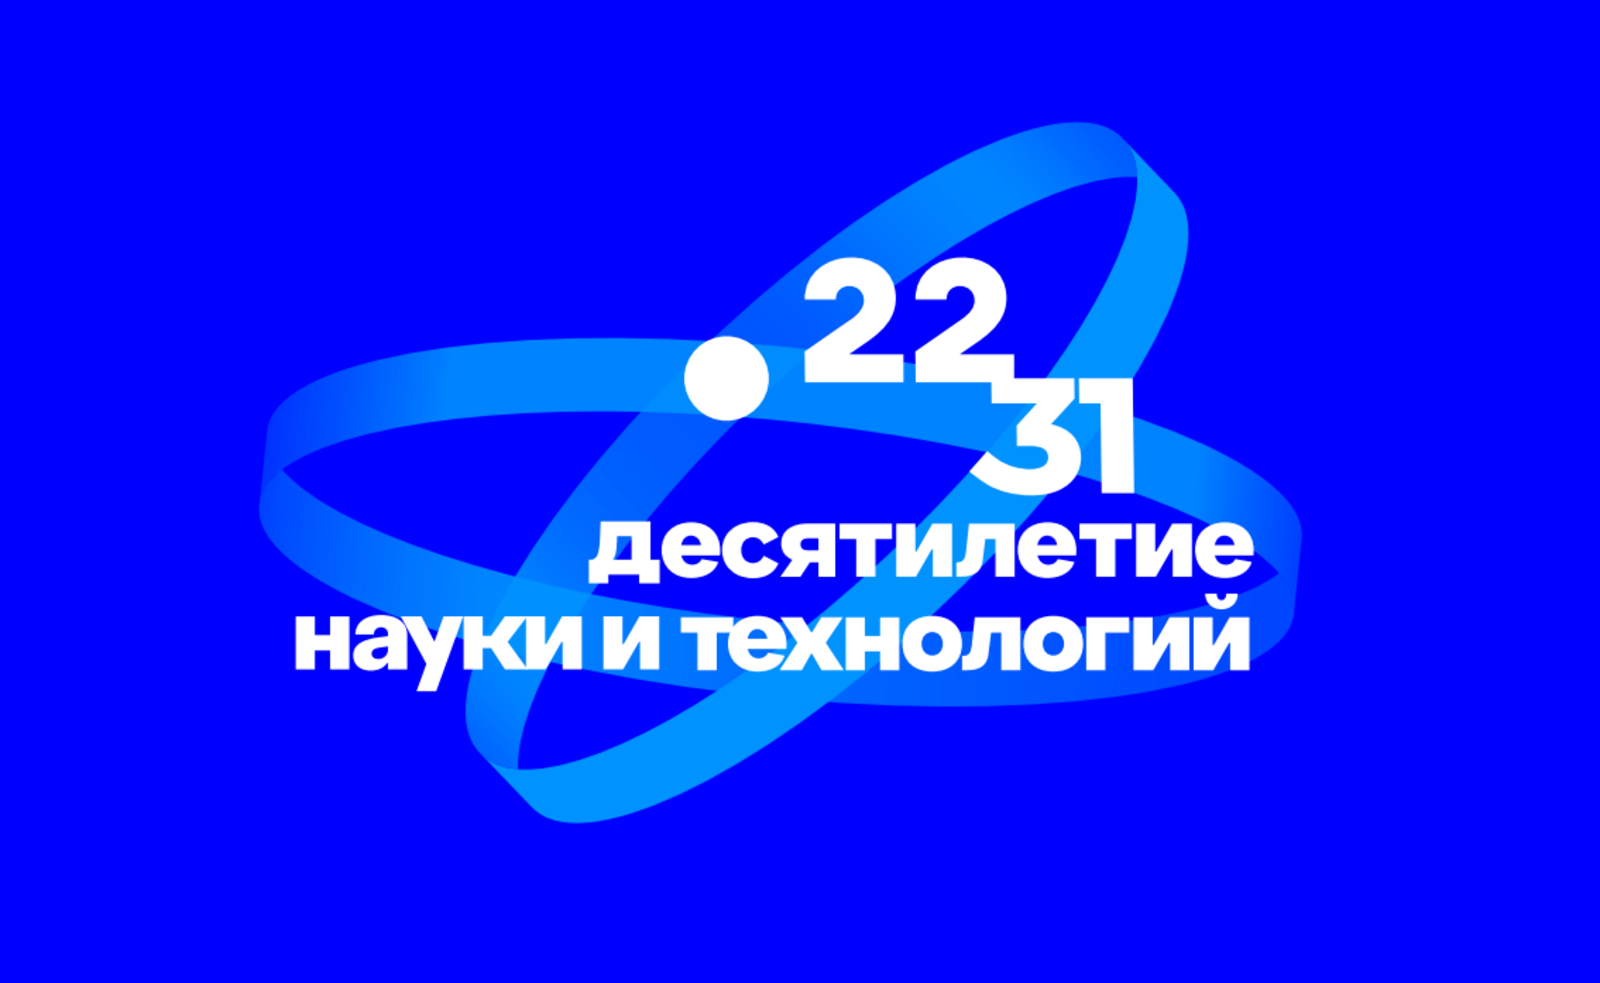 В России стартовало онлайн-голосование за талисман Десятилетия науки и технологий